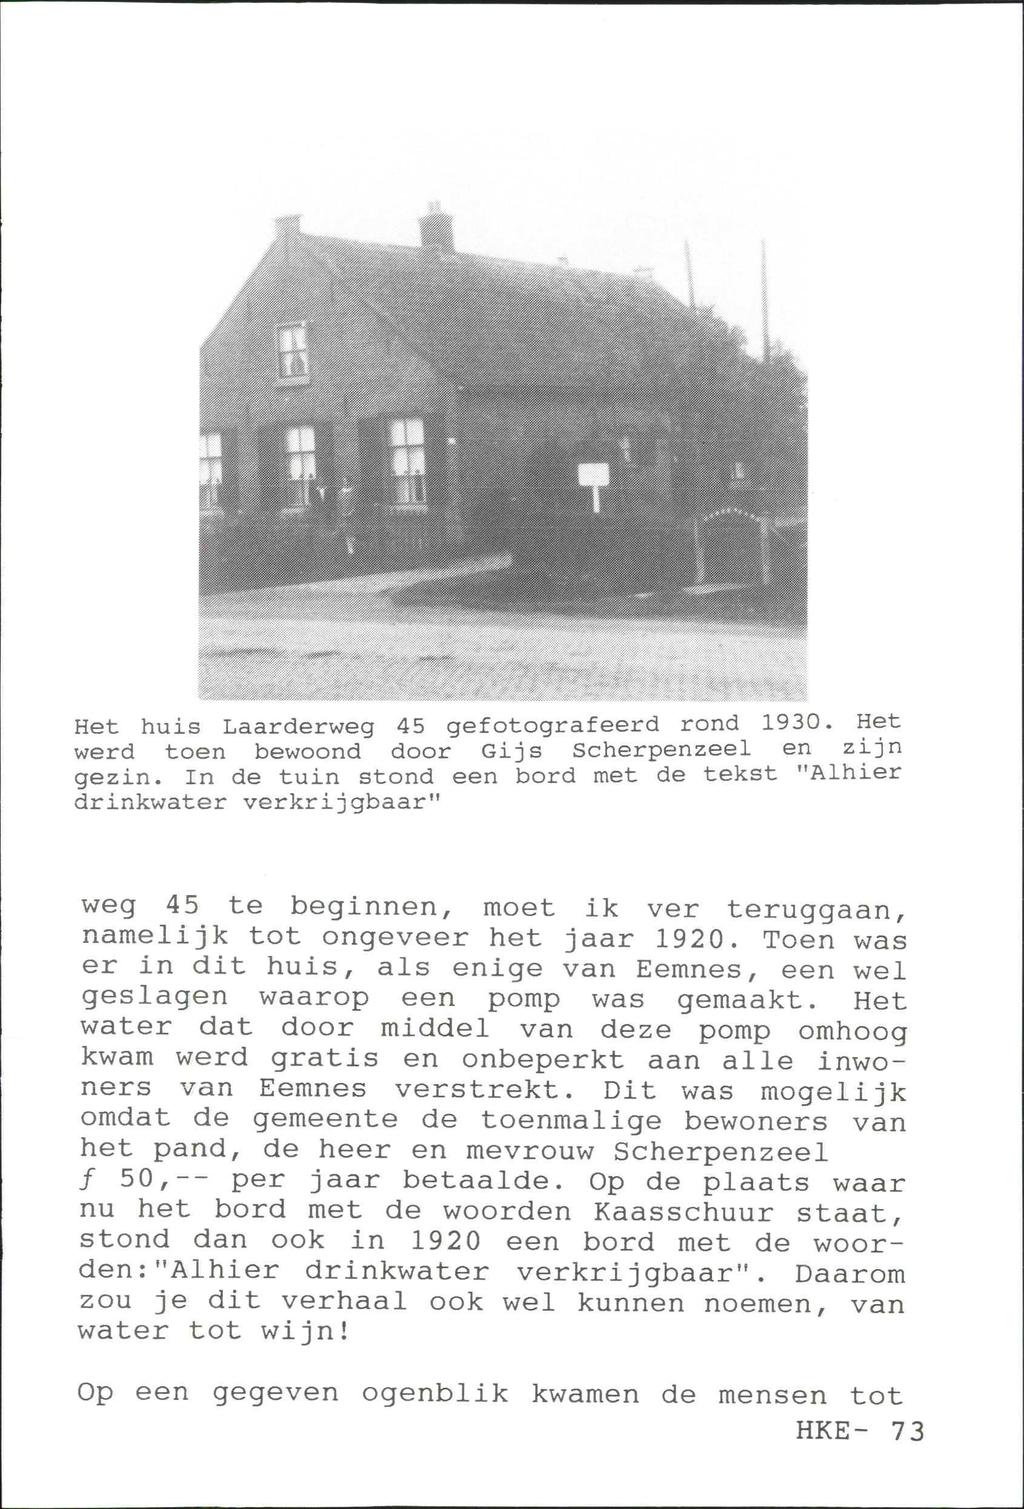 Het huis Laarderweg 45 gefotografeerd rond 1930. Het werd toen bewoond door Gij s Scherpenzeel en zijn gezin.